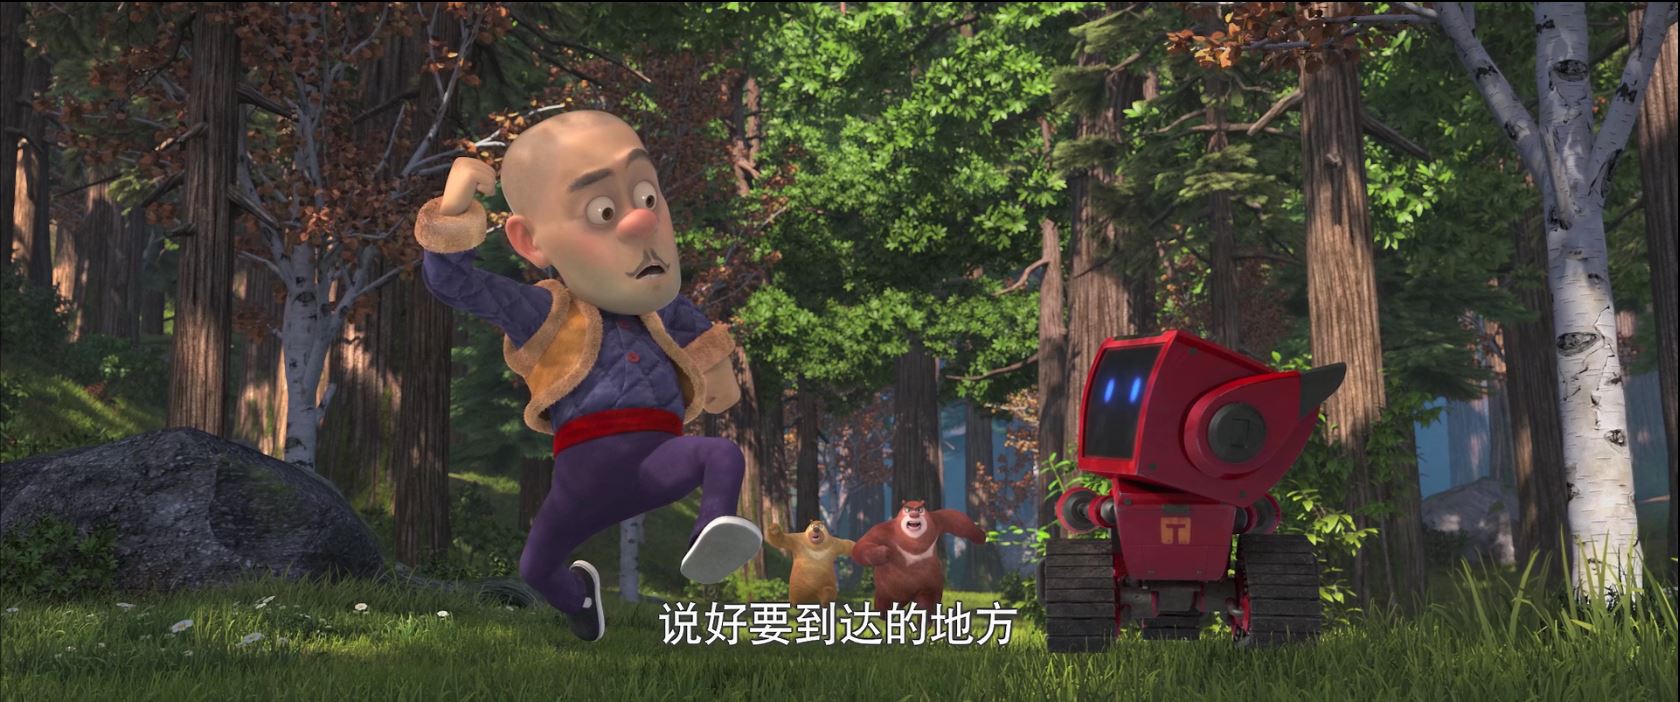 《熊出没·奇幻空间》2017儿童动画.HD1080P.国语中字截图